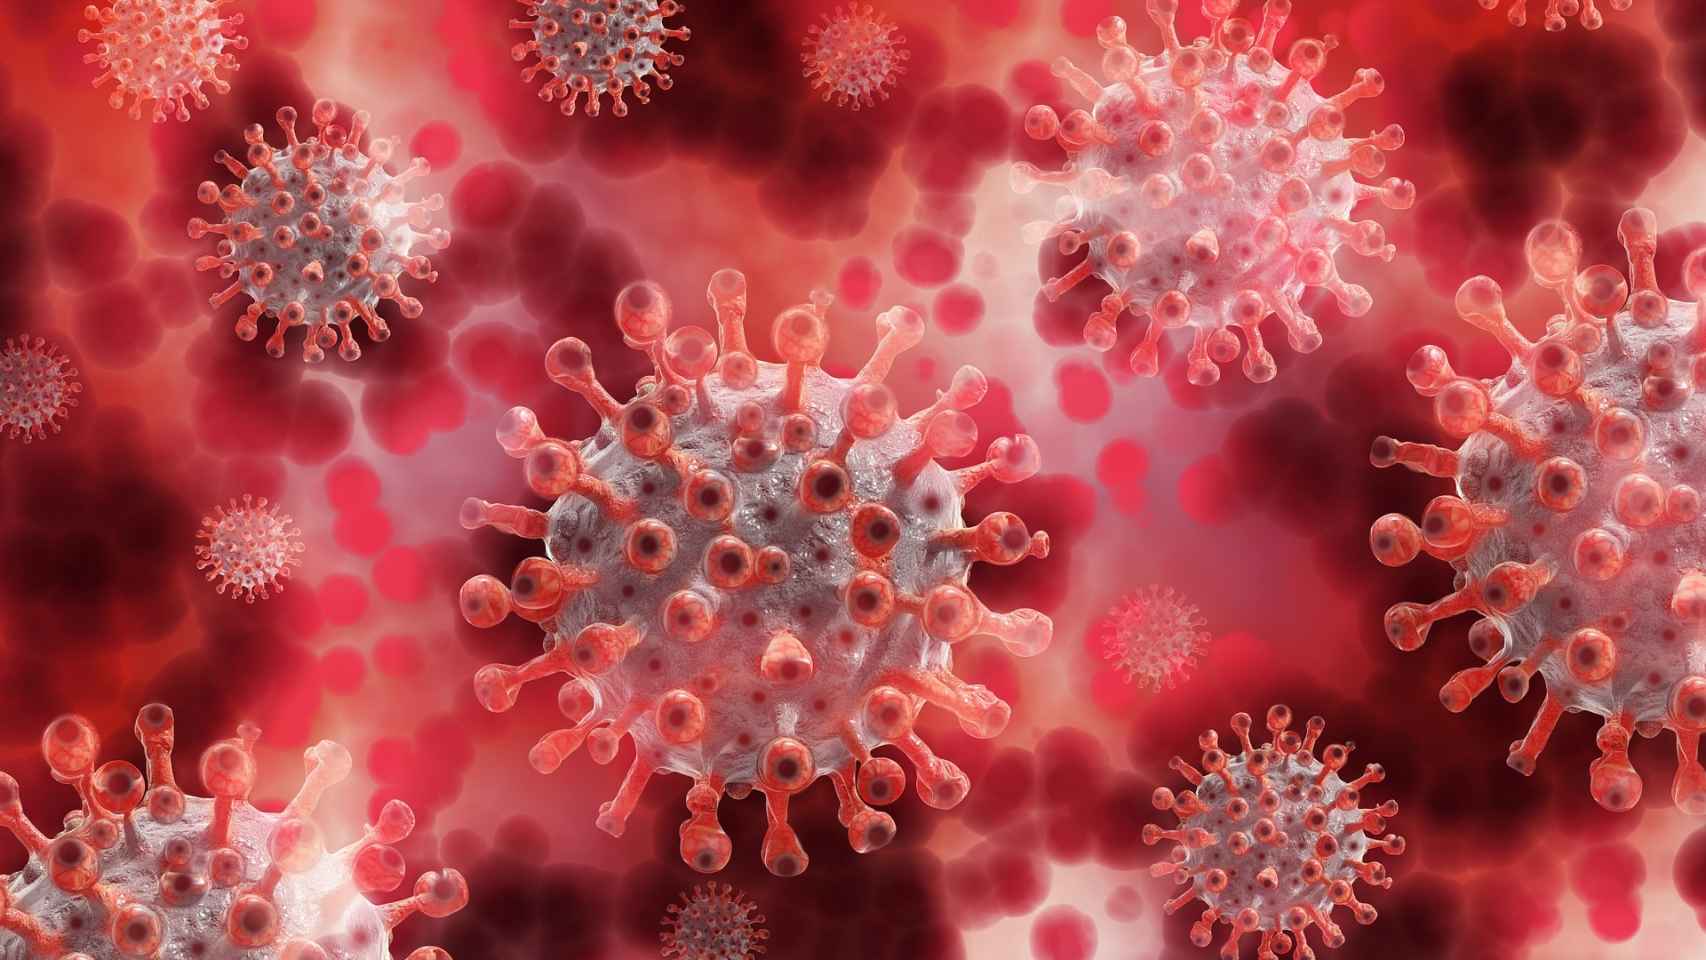 El Comav señala la capacidad de los extractos de cúrcuma y mostaza para impedir la capacidad reproductiva del virus.